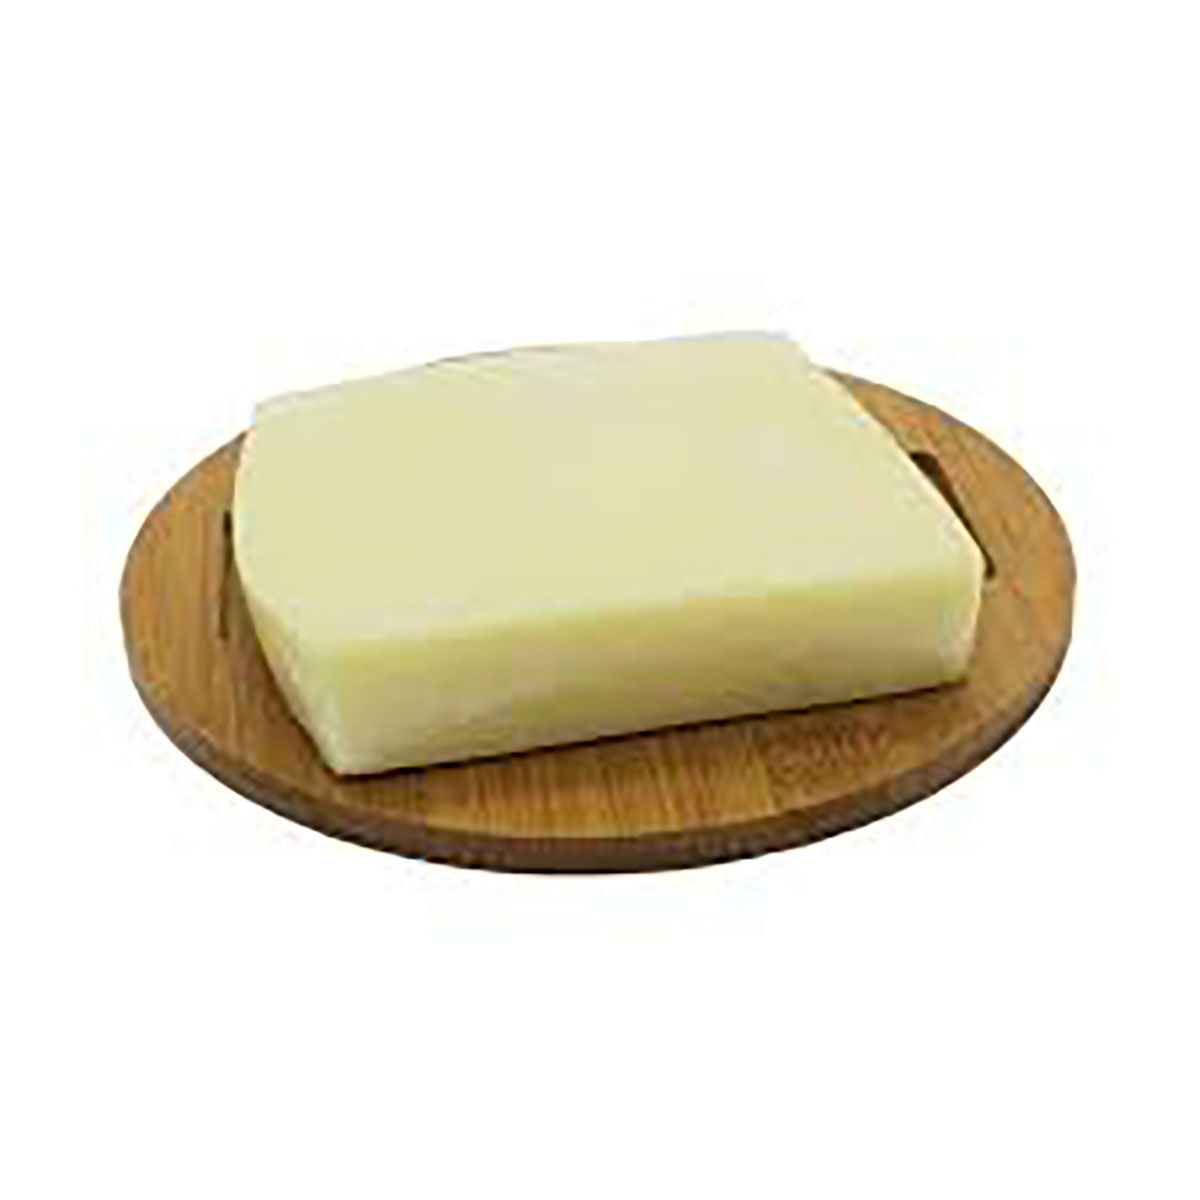 queijo-mussarela-carrefour-400-g-1.jpg